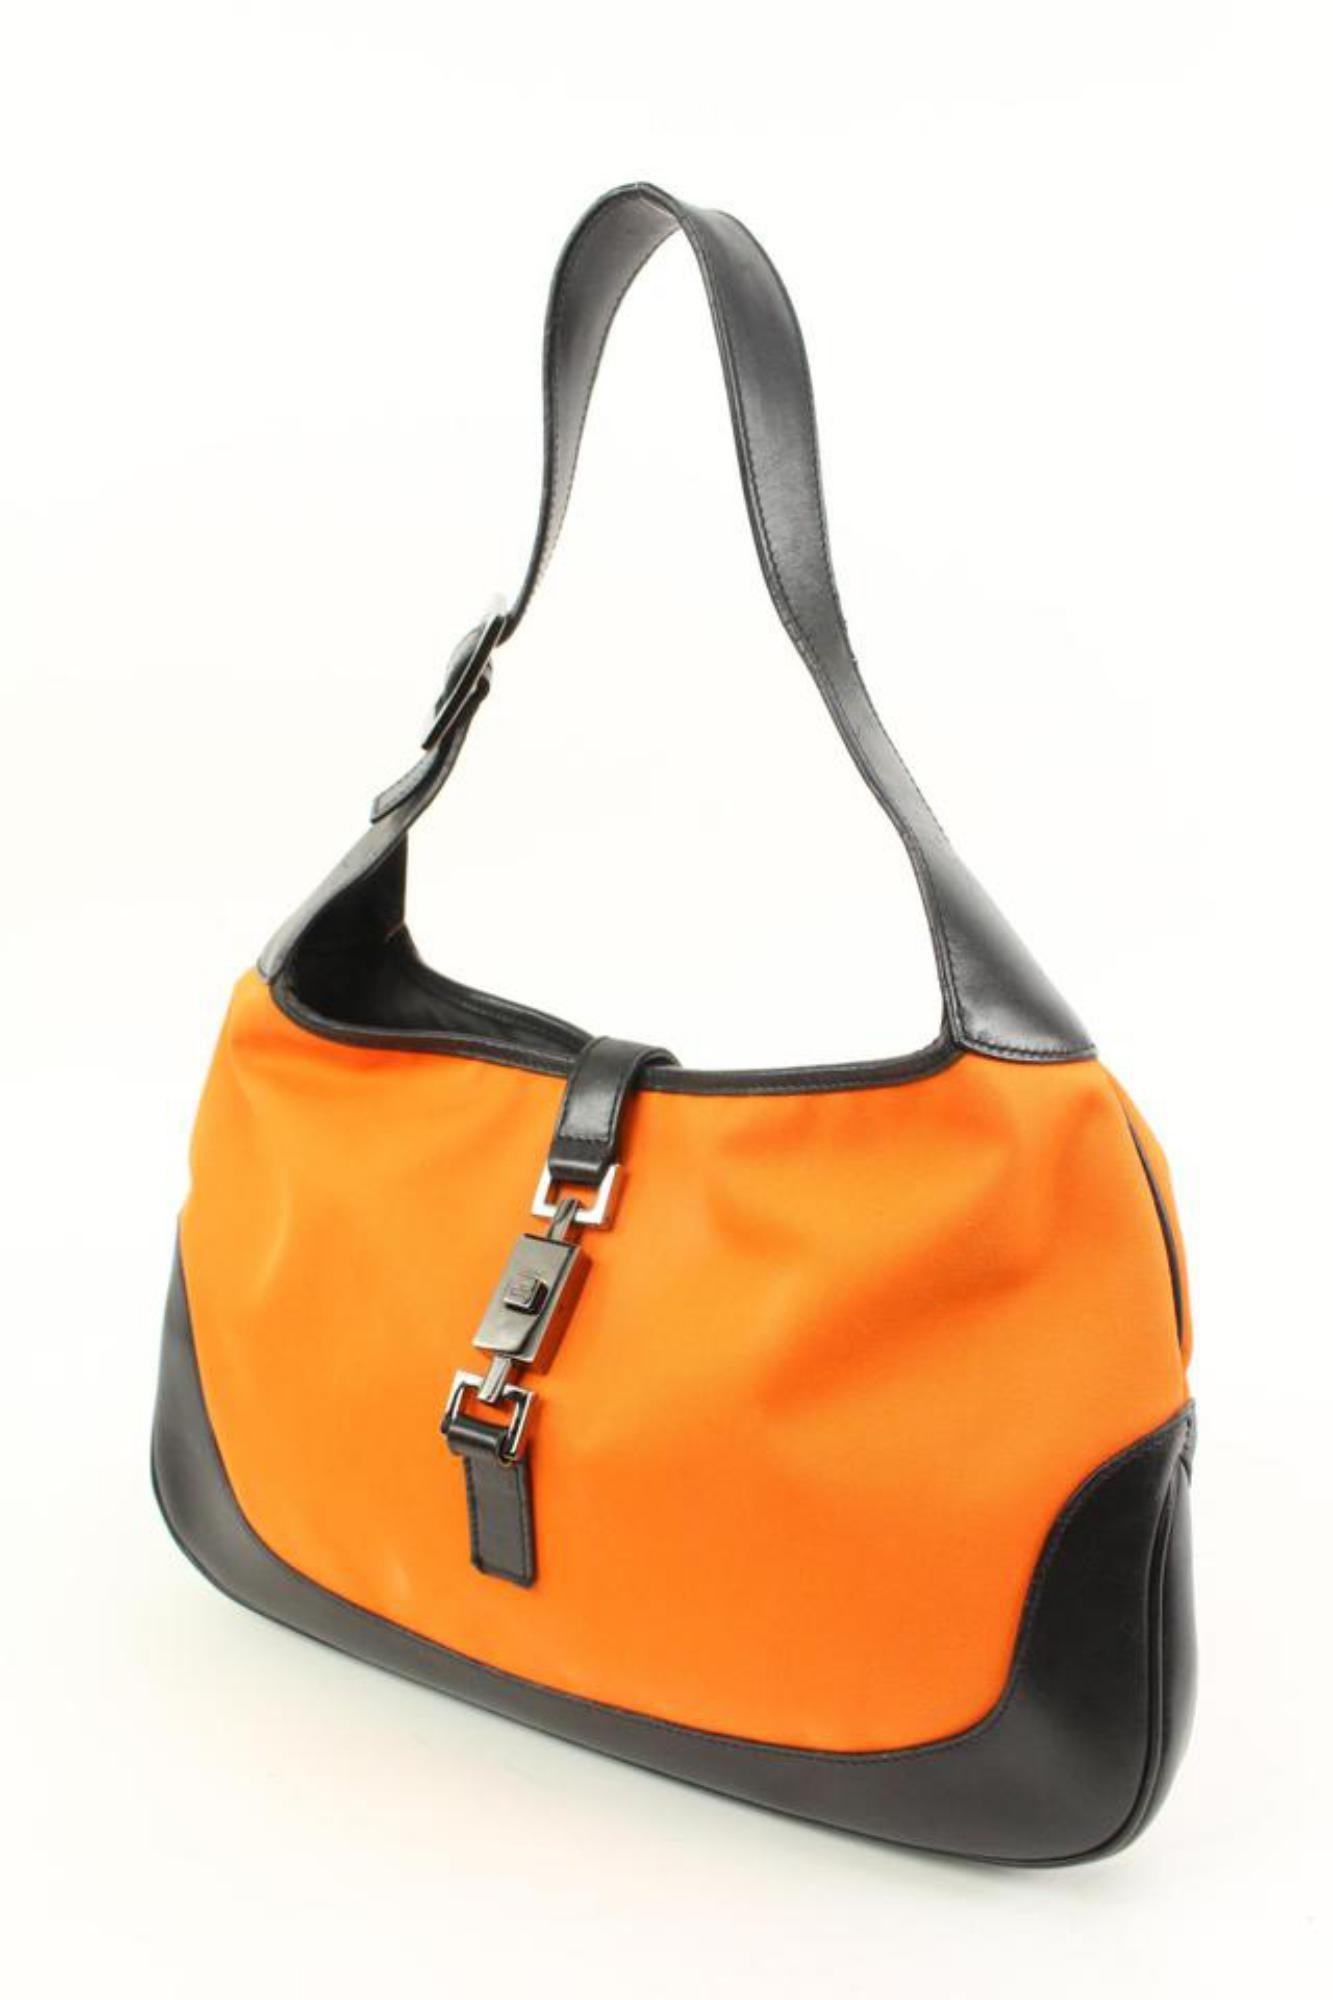 Gucci Orange x Black Jackie-O Hobo Bag 76g328s
Code de date/Numéro de série : 001-3306-001998
Fabriqué en : Italie
Mesures : Longueur :  12,5